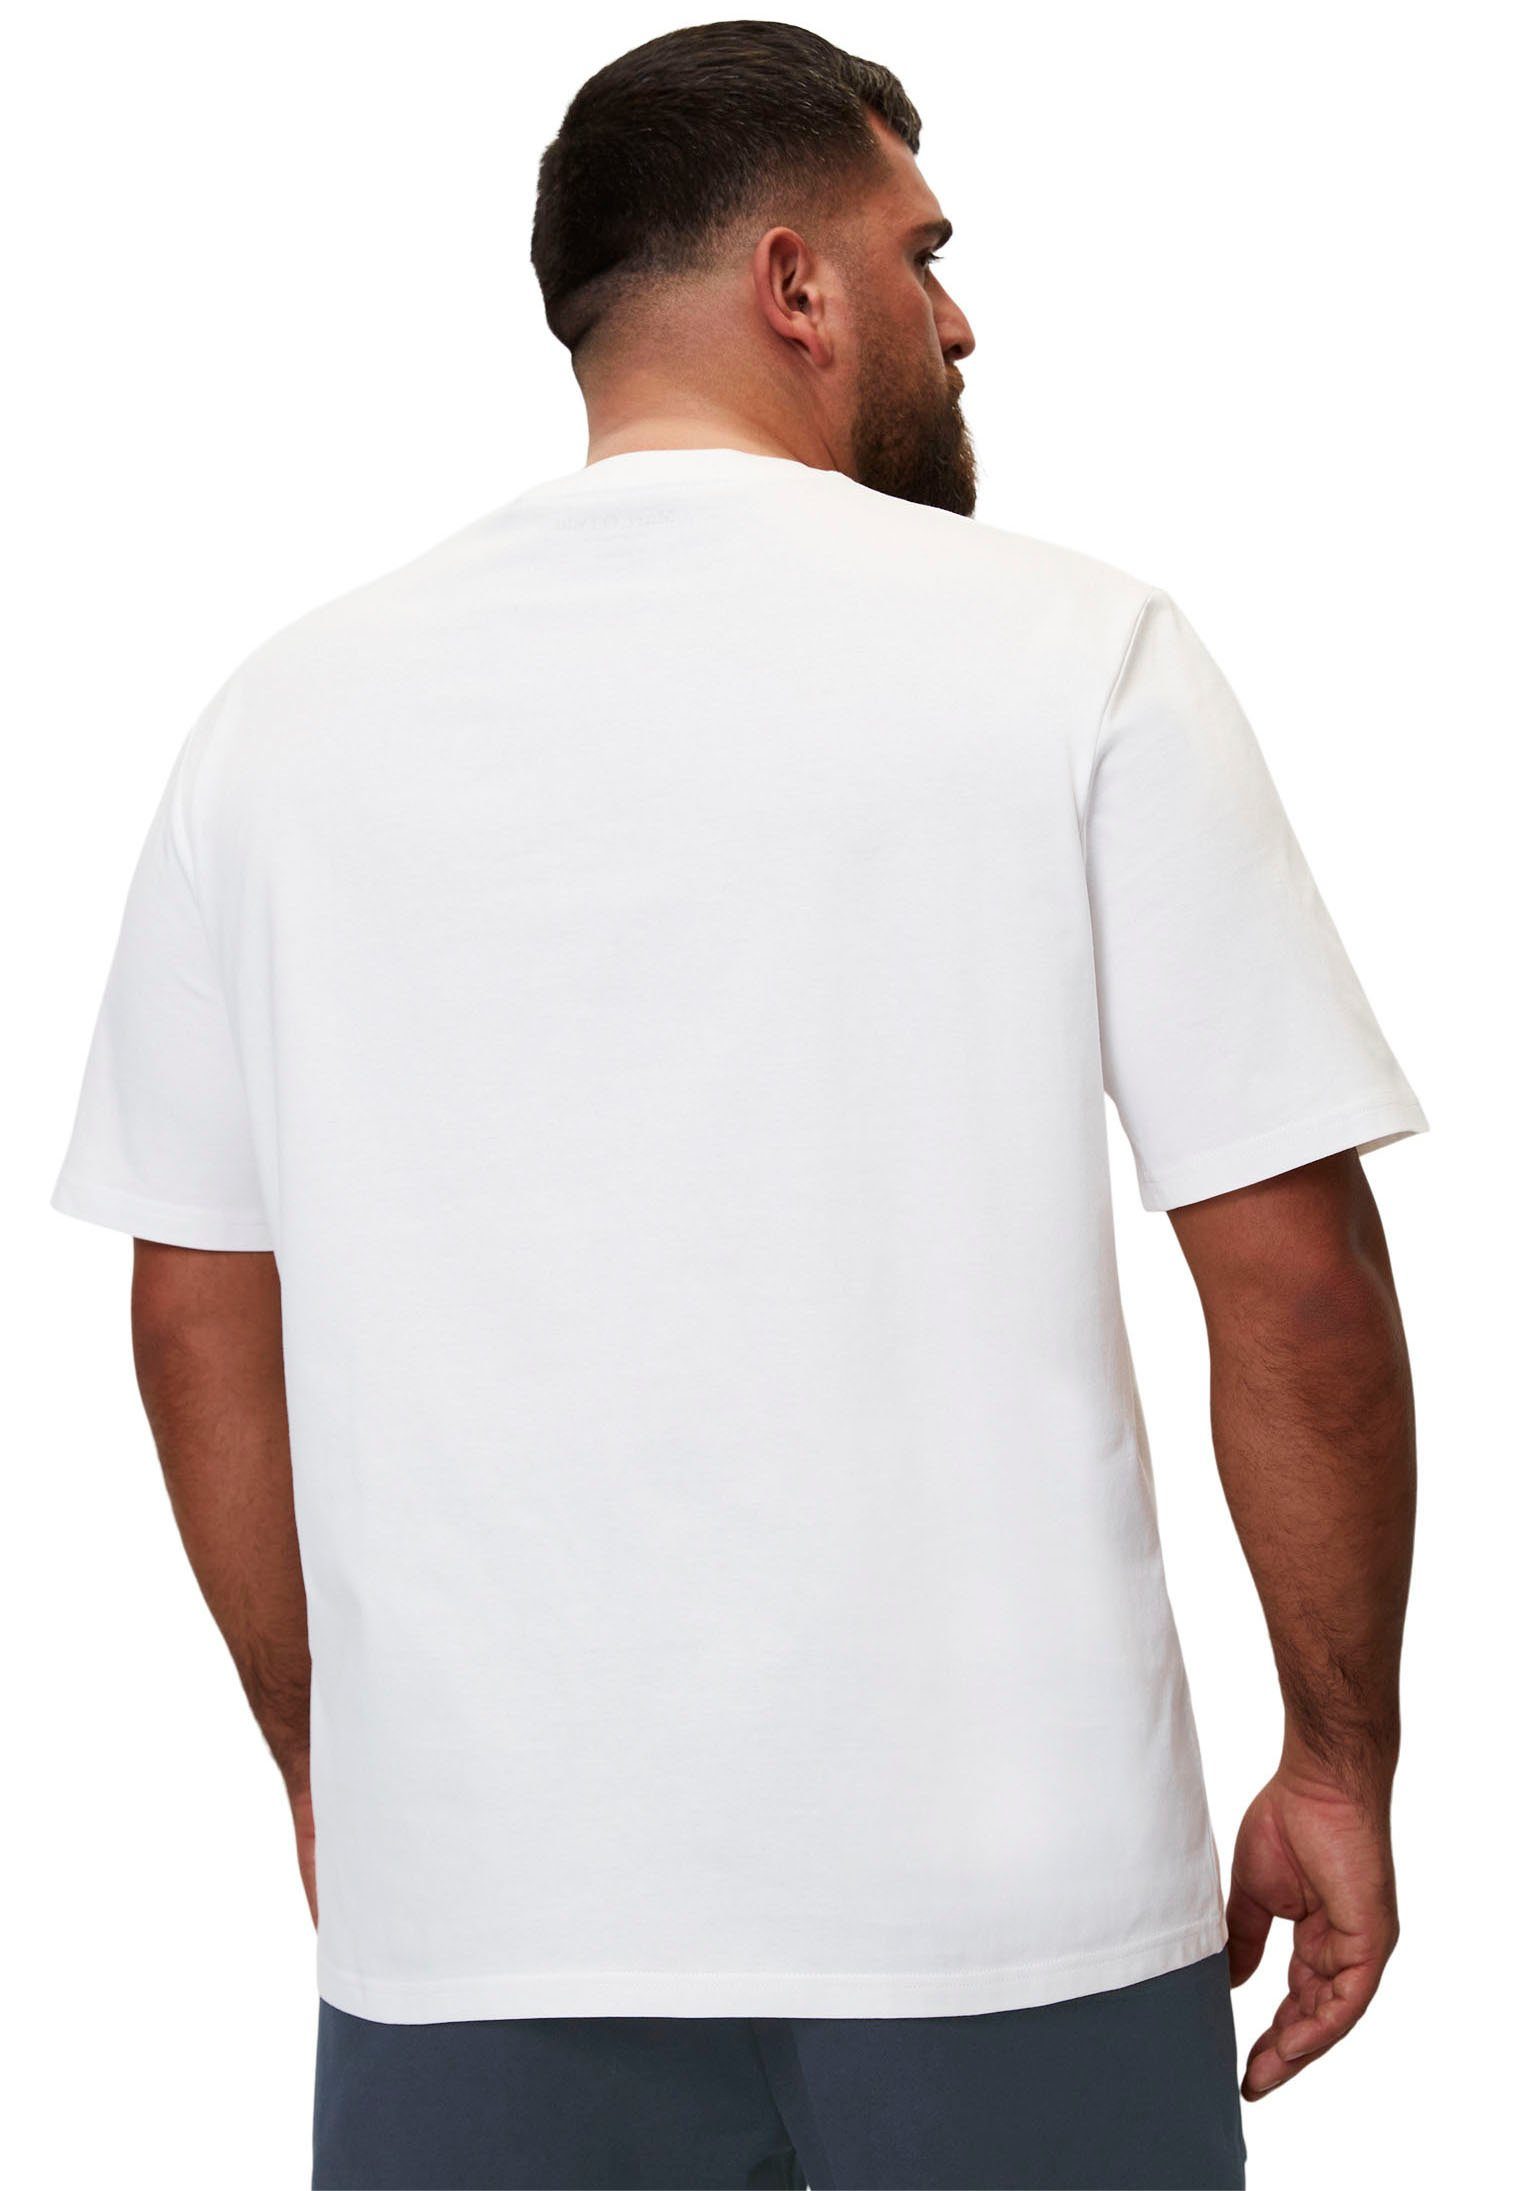 white in O'Polo T-Shirt Big&Tall-Größen Marc